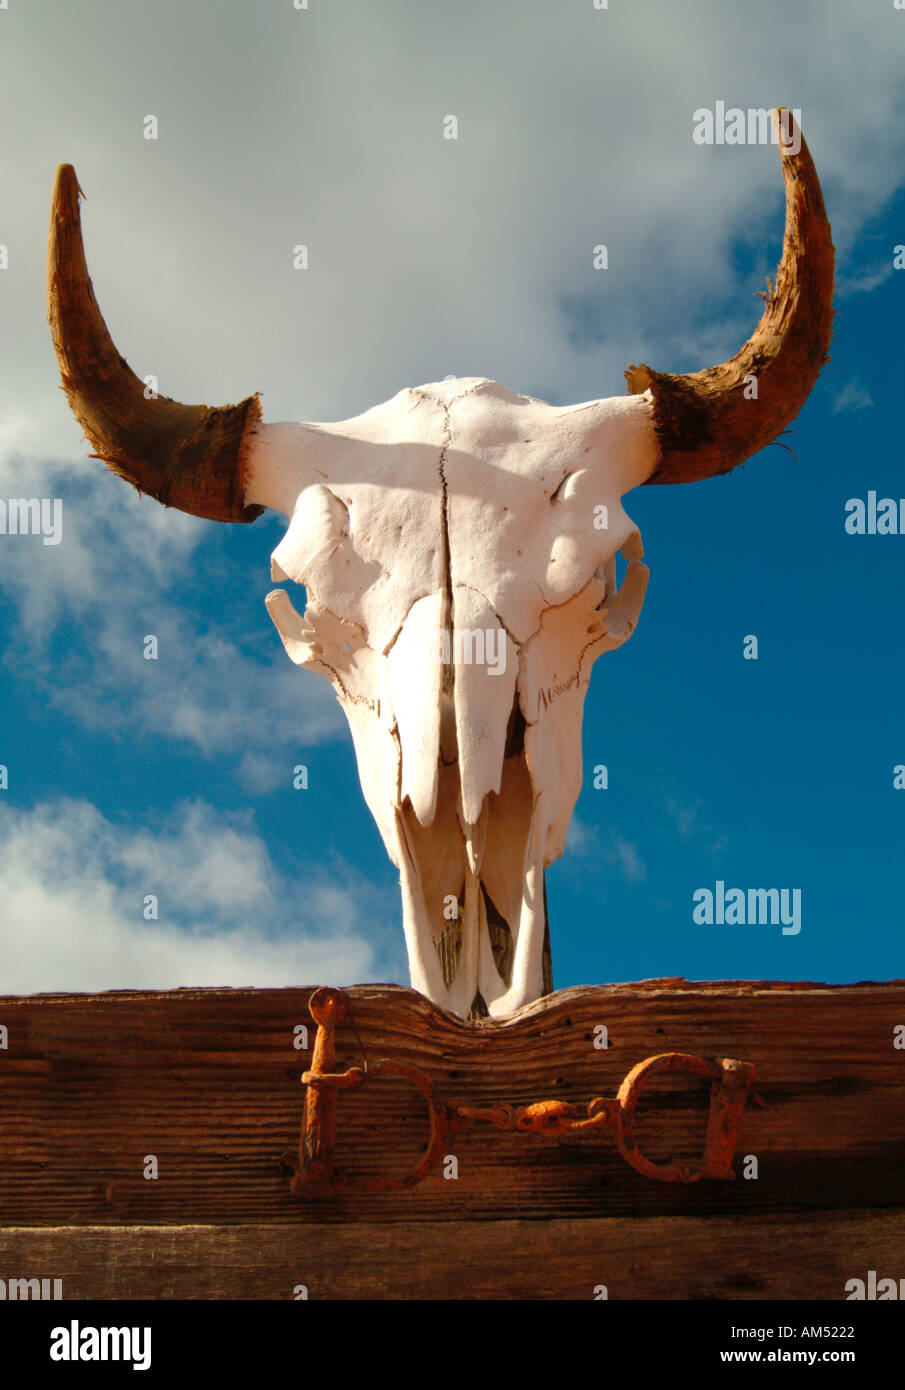 steer skull with horns Stock Photo